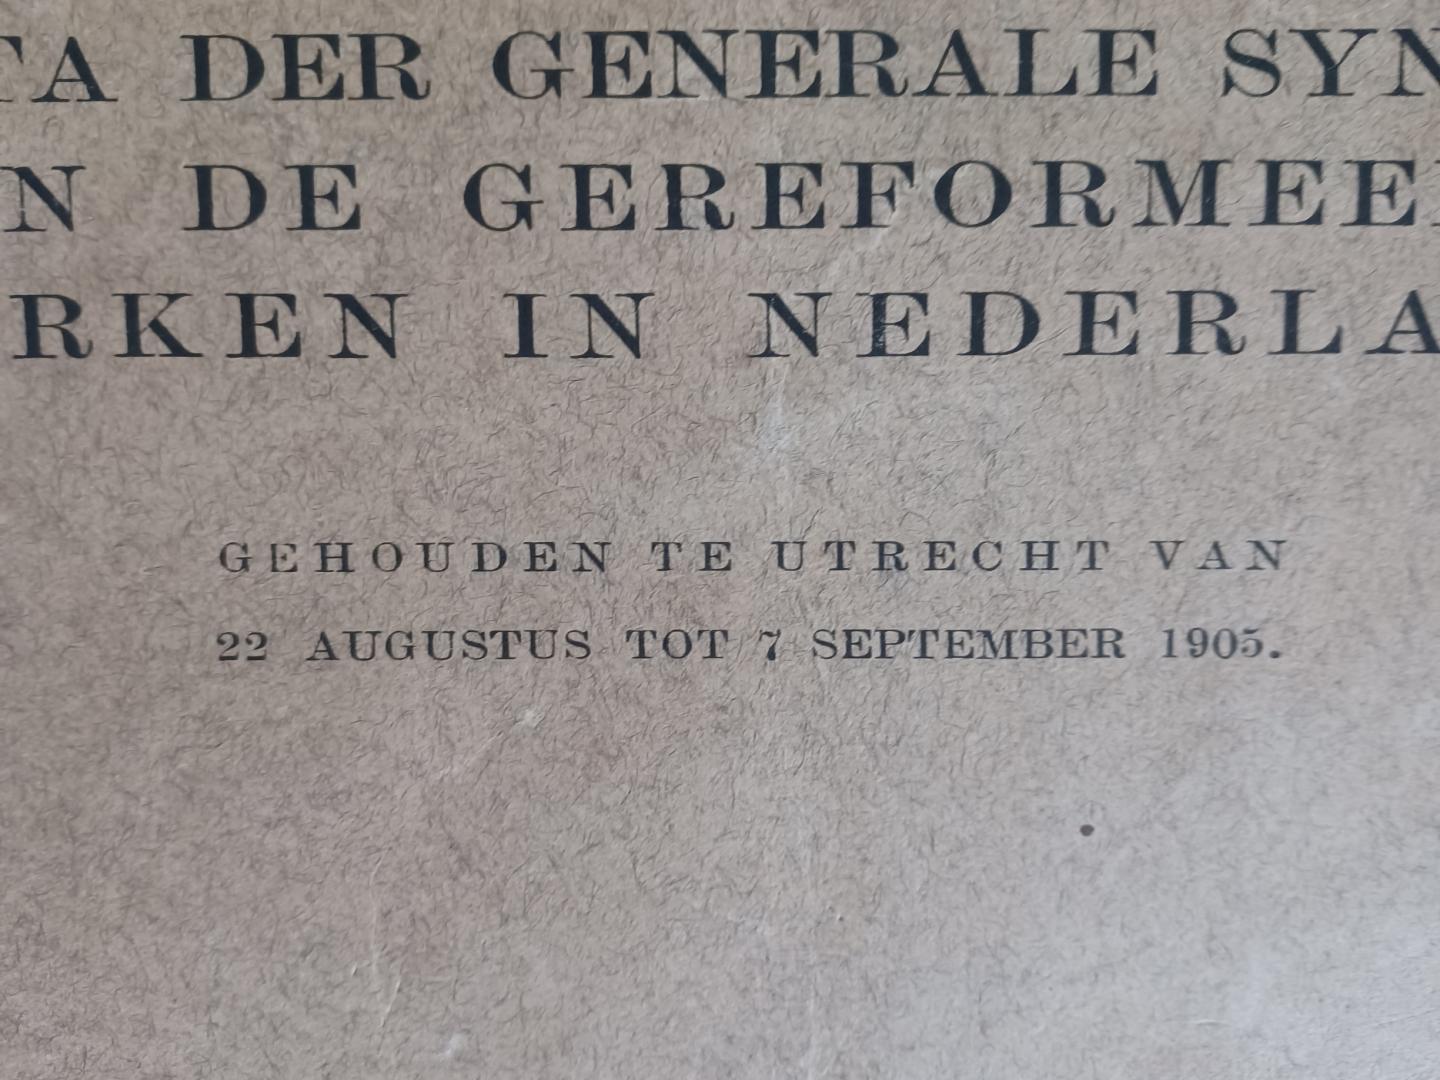  - Acta der generale synode van de Gereformeerde Kerken in Nederland, gehouden te Utrecht van 22 augustus tot 7 september 1905